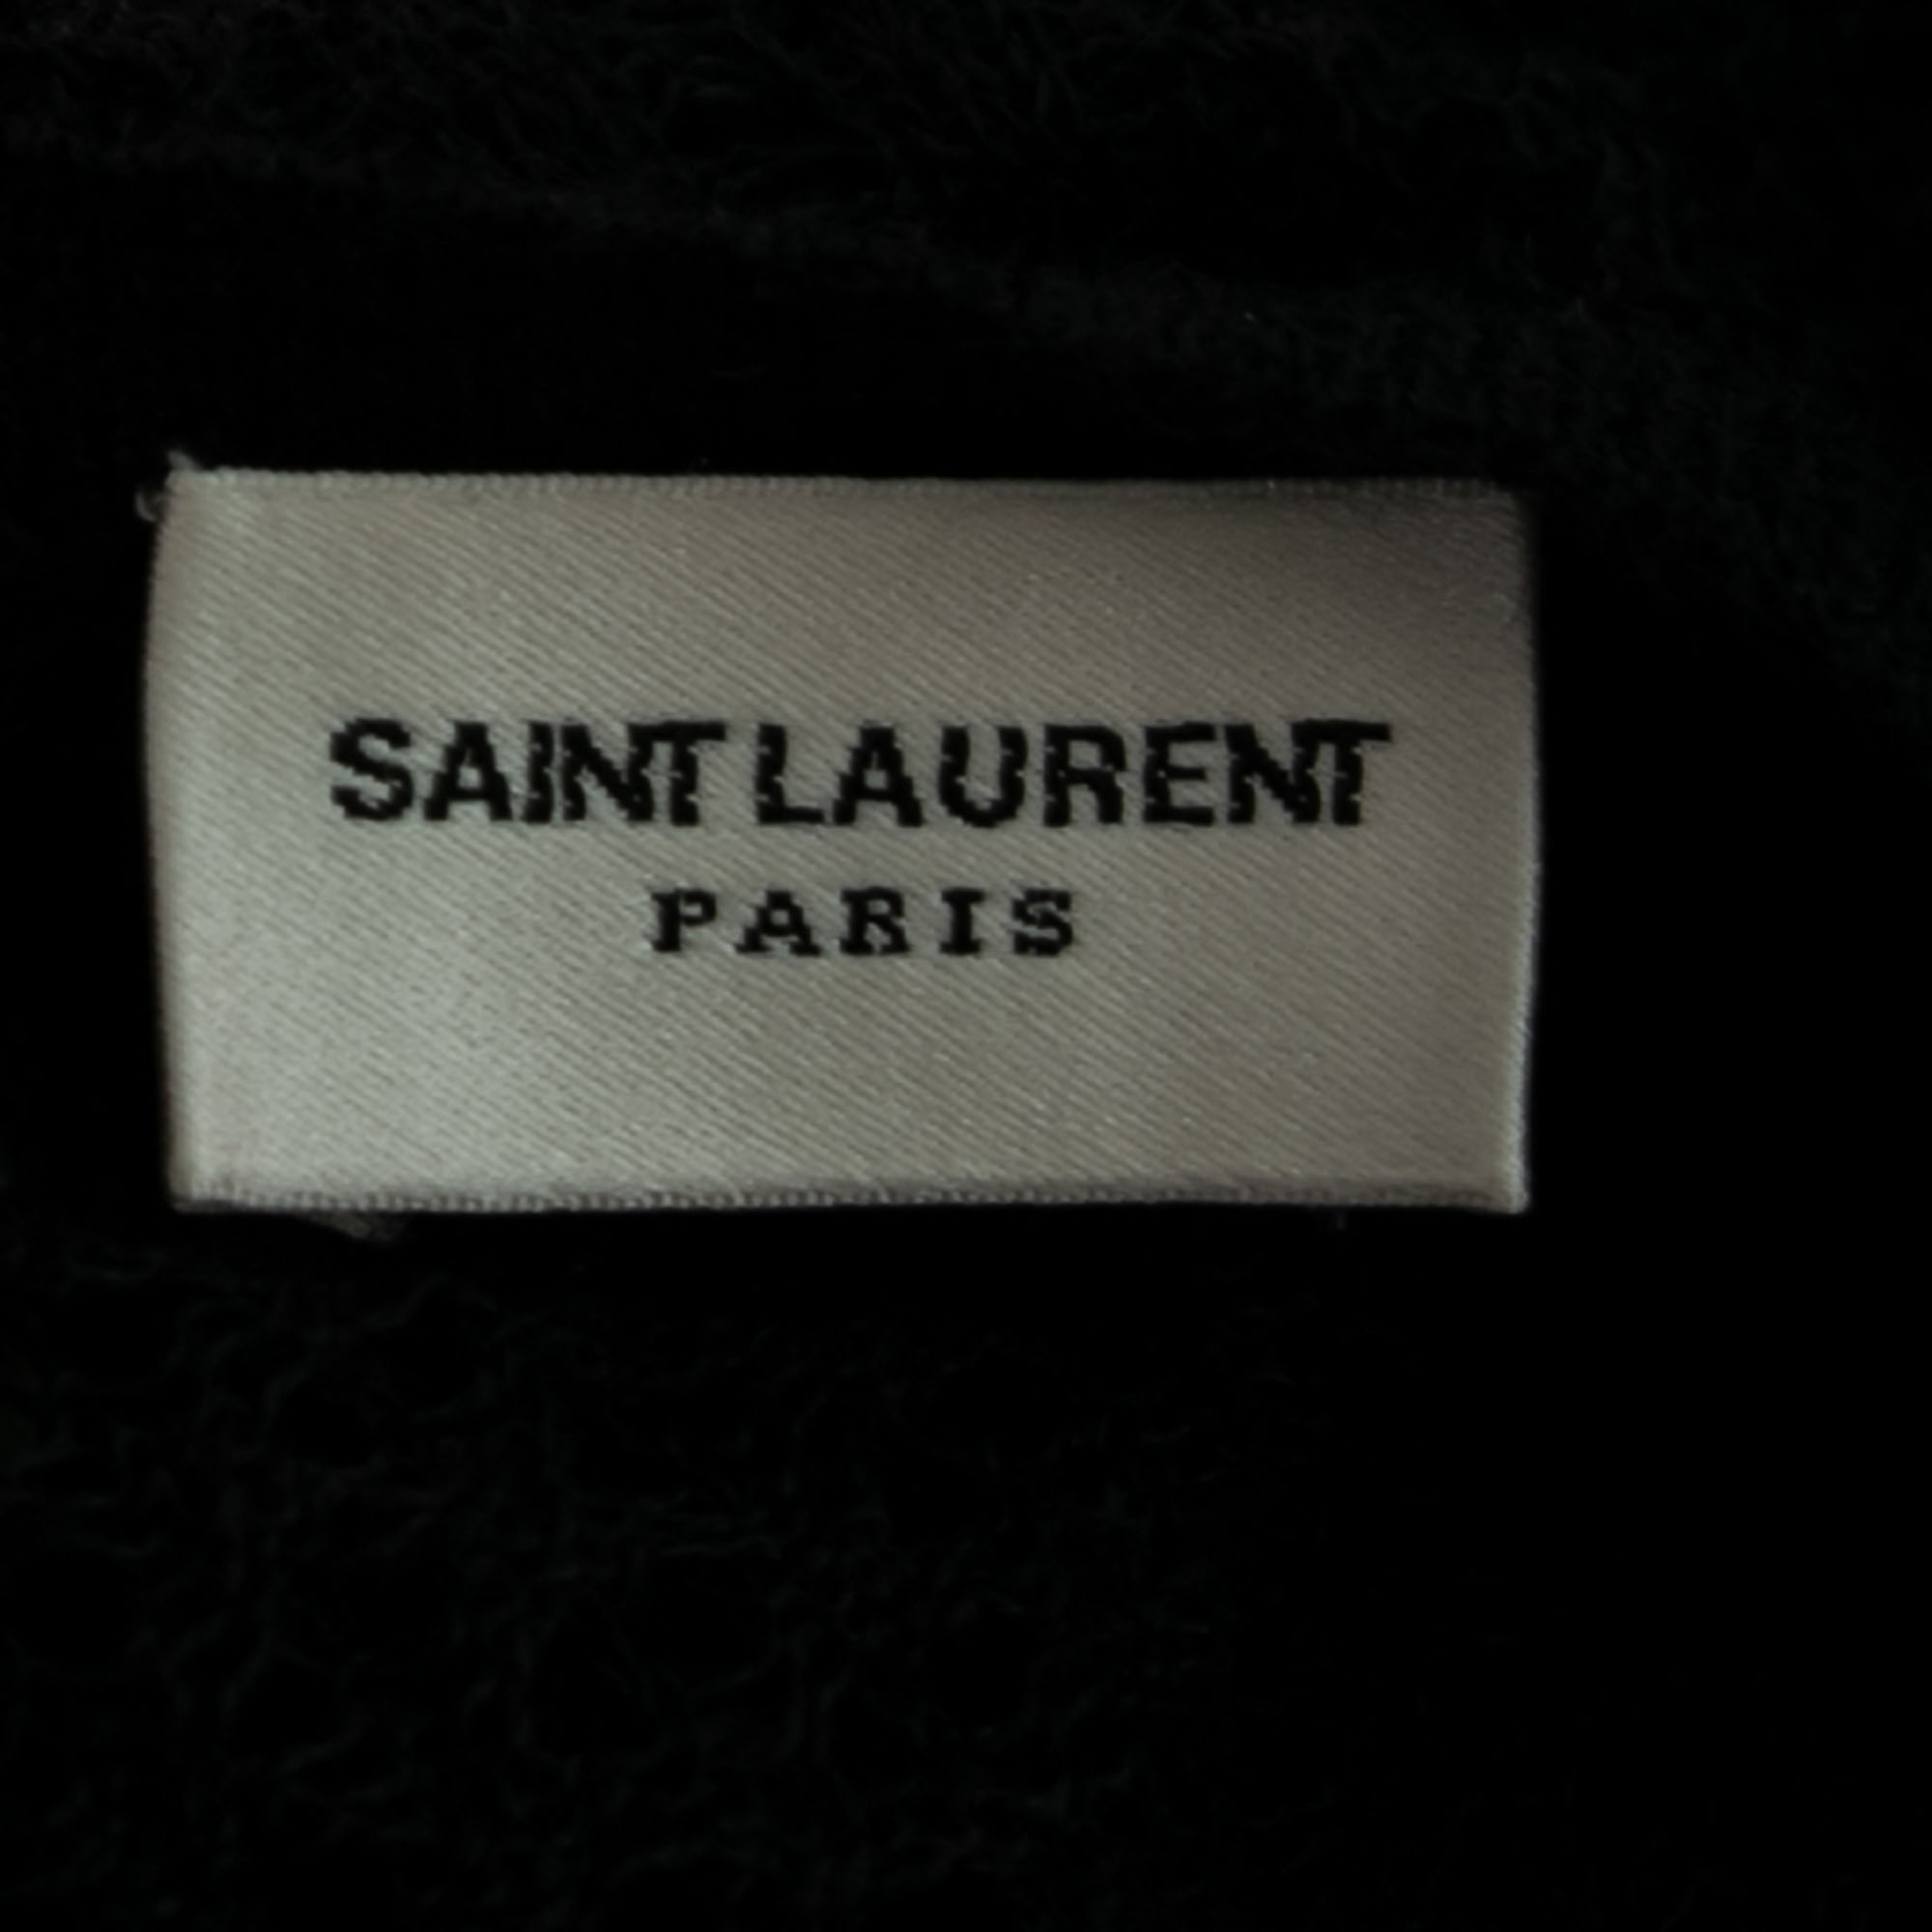 Saint Laurent Paris Black Perforated Knit Mesh Long Sleeve Dress S